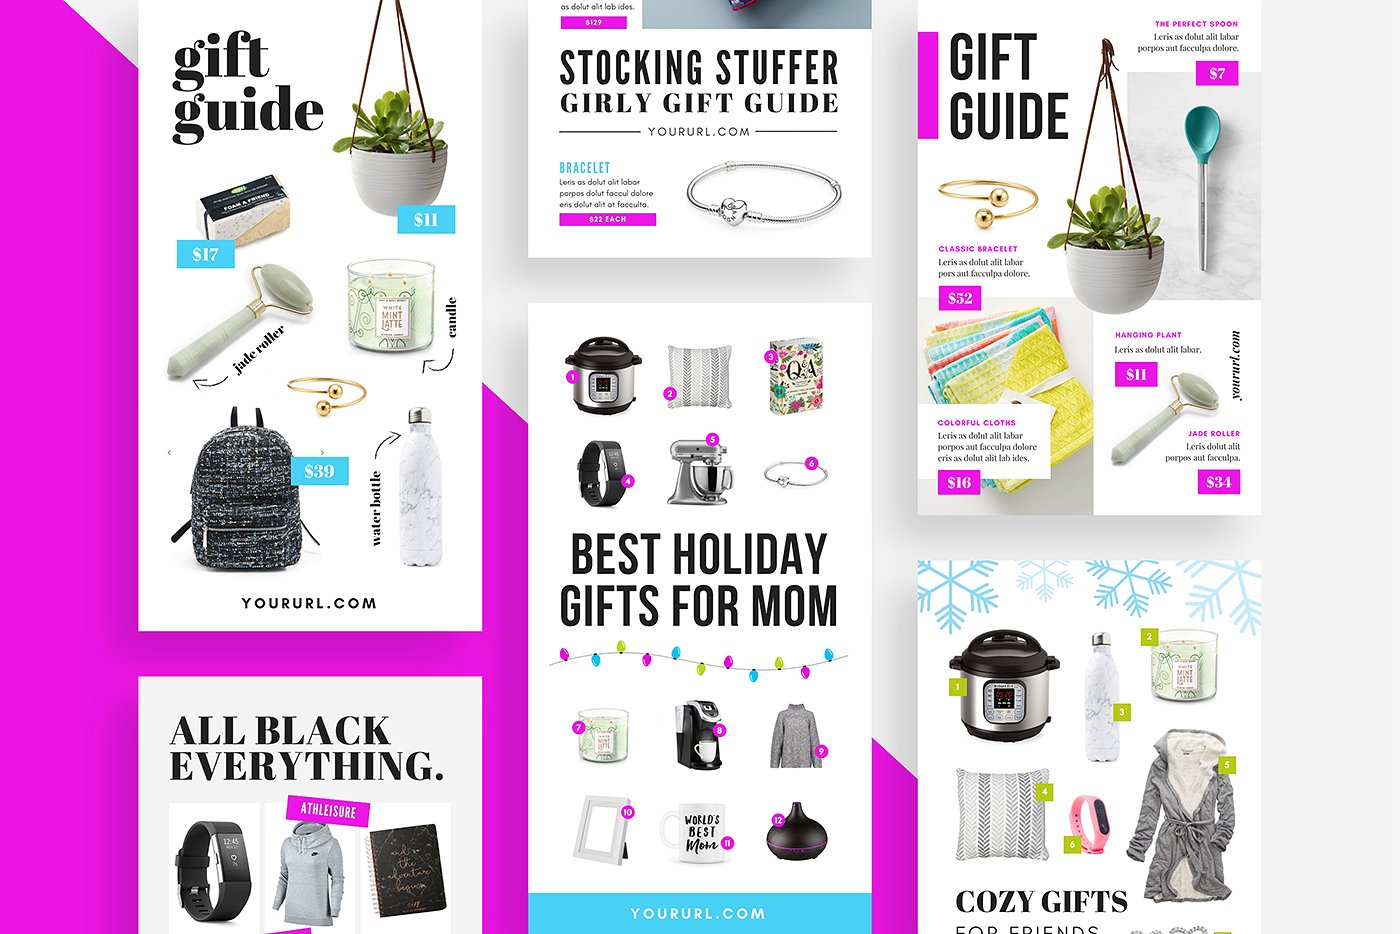 礼品指南社交媒体模板第一素材精选 Gift Guide Pinterest Templates [psd]插图(3)